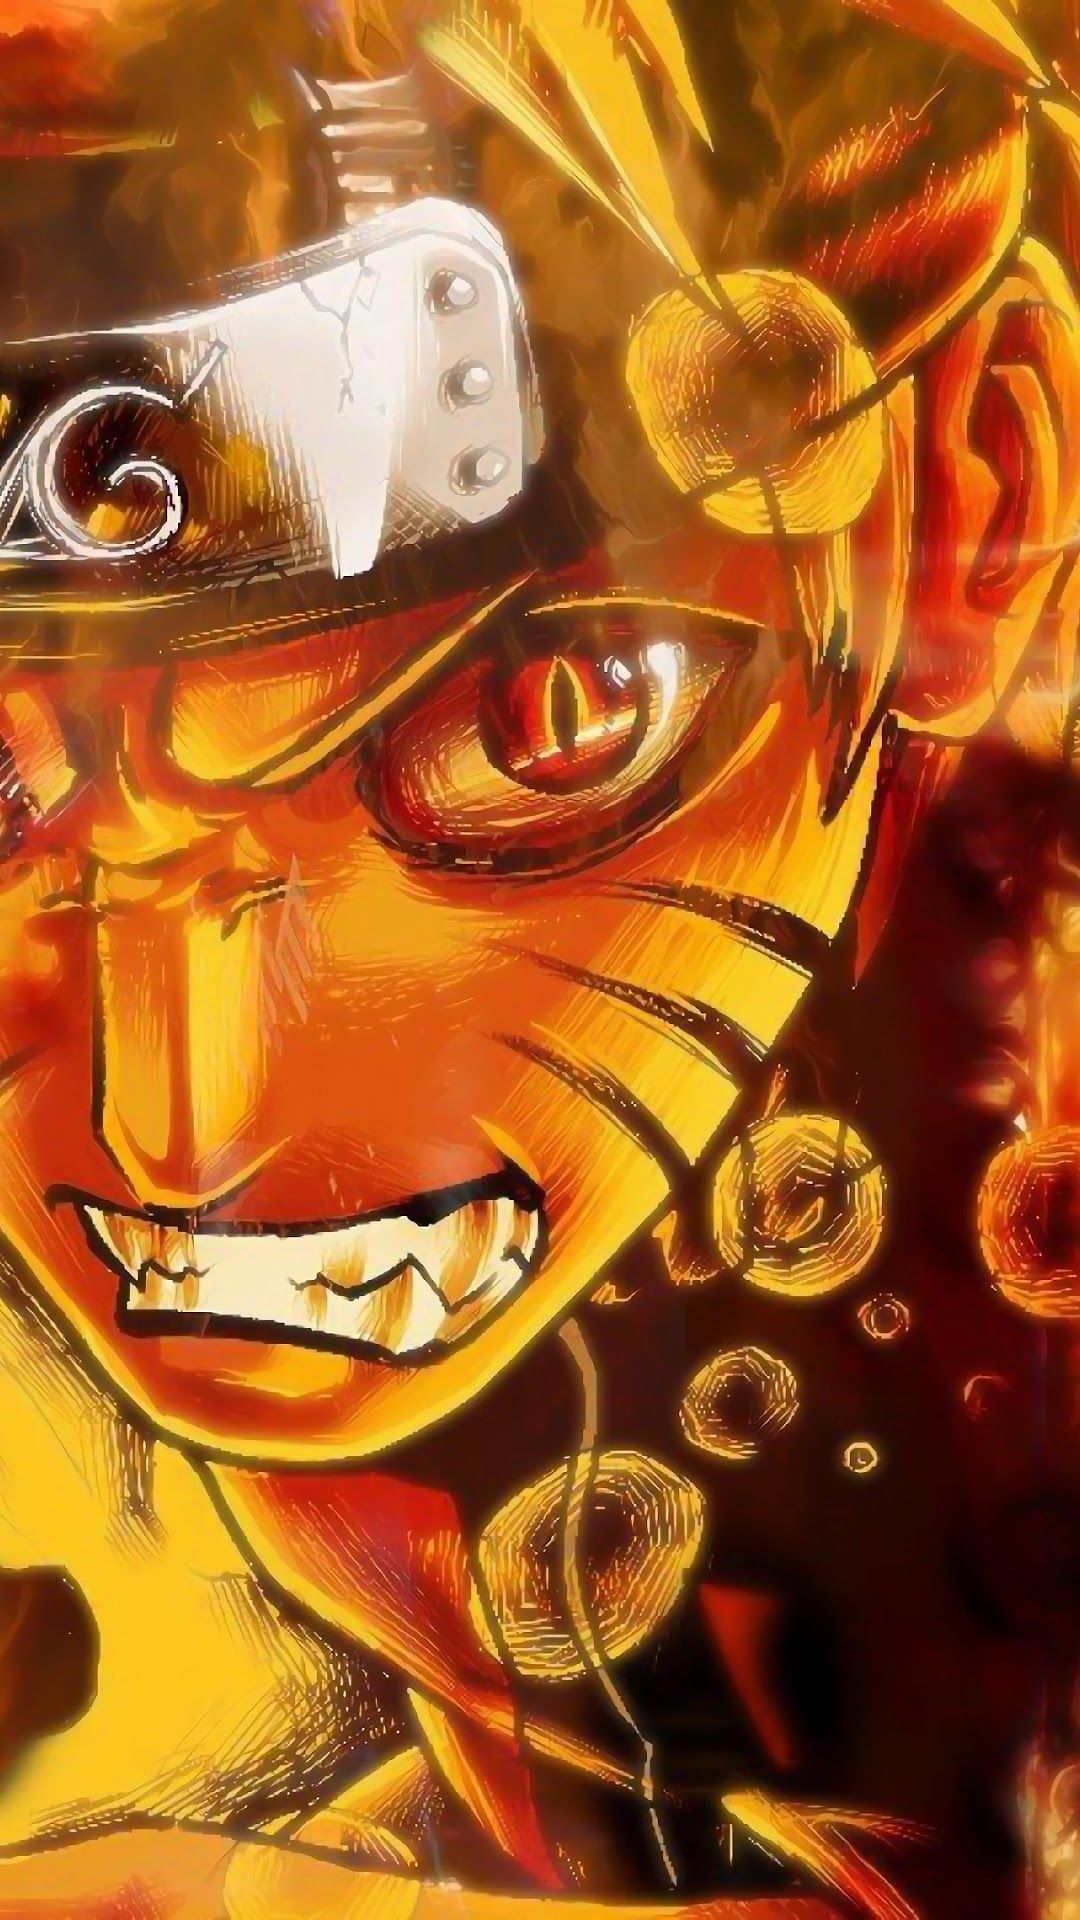 Naruto Uzumaki 4K Wallpapers